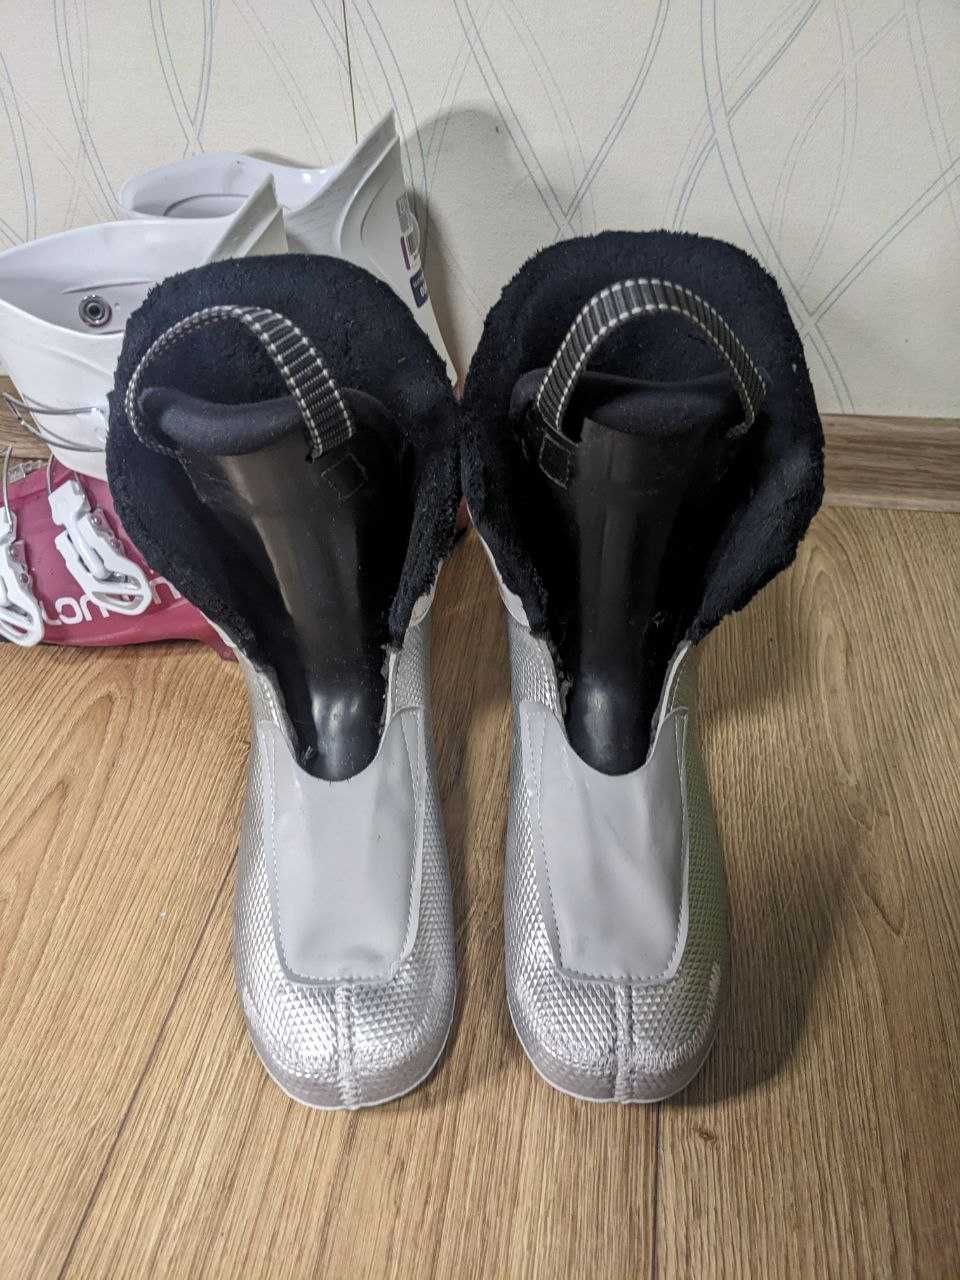 Лыжные ботинки SALOMON. Лижні черевики 23-23.5 см